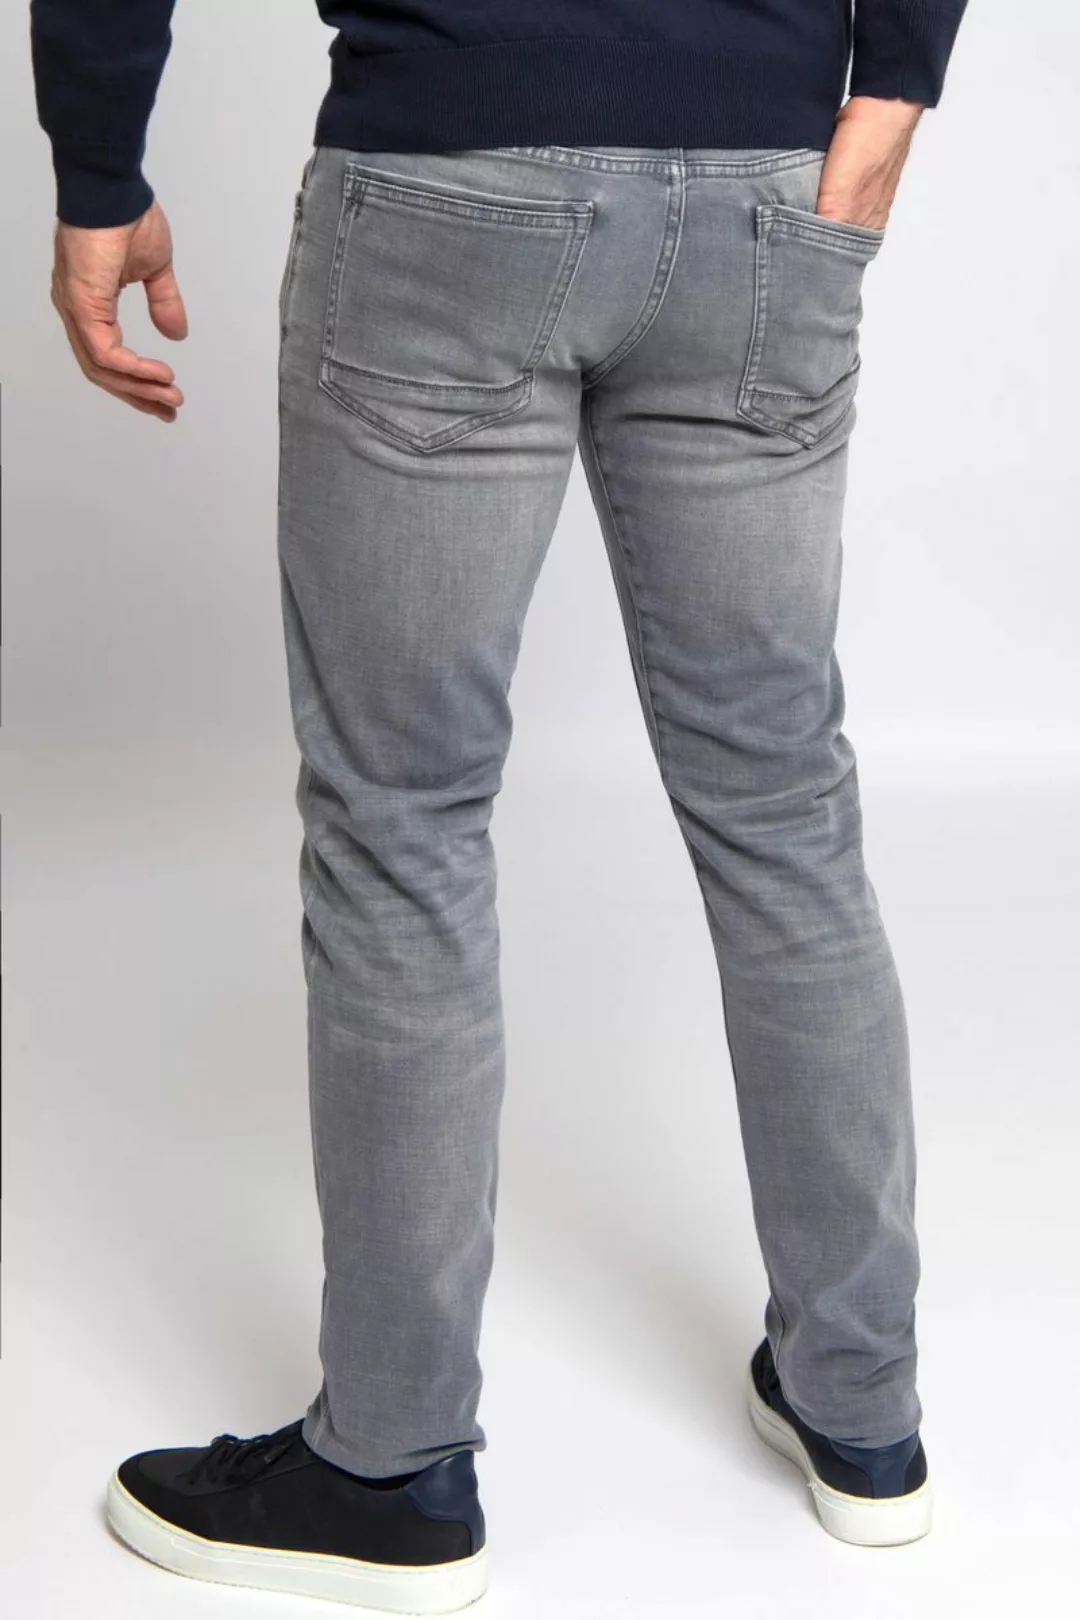 PME Legend Tailwheel Jeans LH Grau - Größe W 29 - L 32 günstig online kaufen